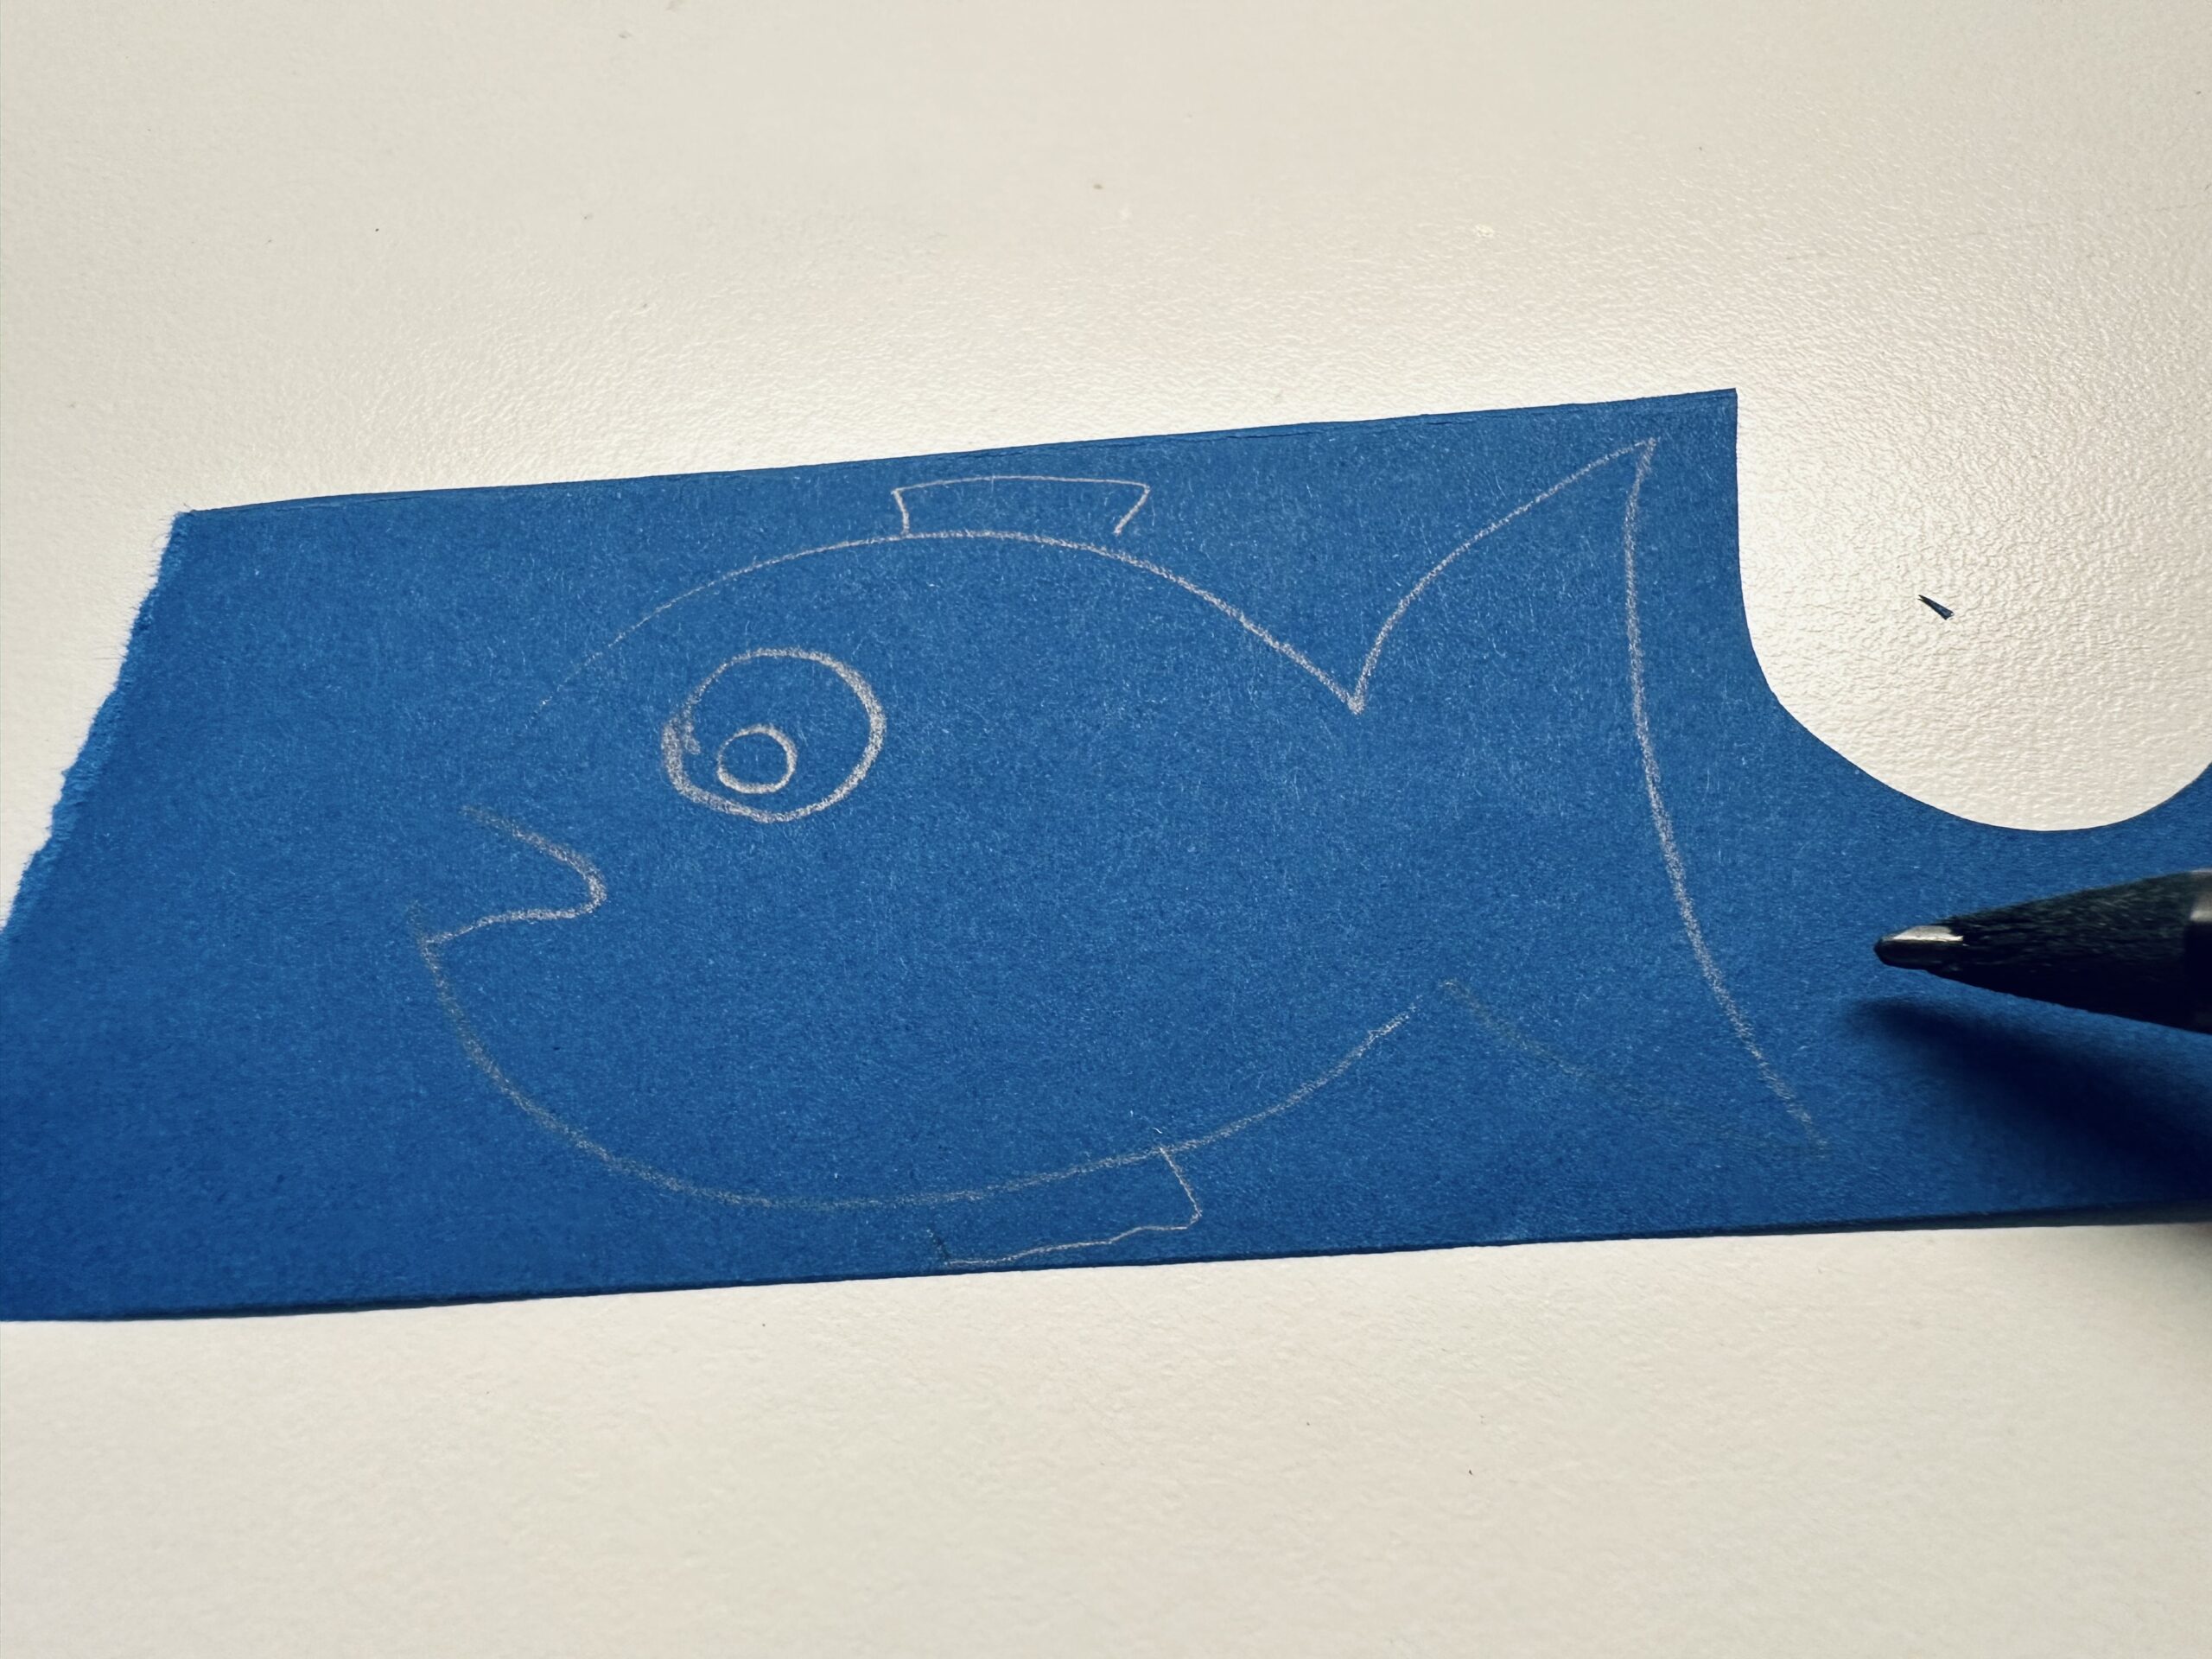 Bild zum Schritt 7 für das Bastel- und DIY-Abenteuer für Kinder: 'Malt einen großen Fisch auf ein Tonpapier. Die Farbe könnt...'